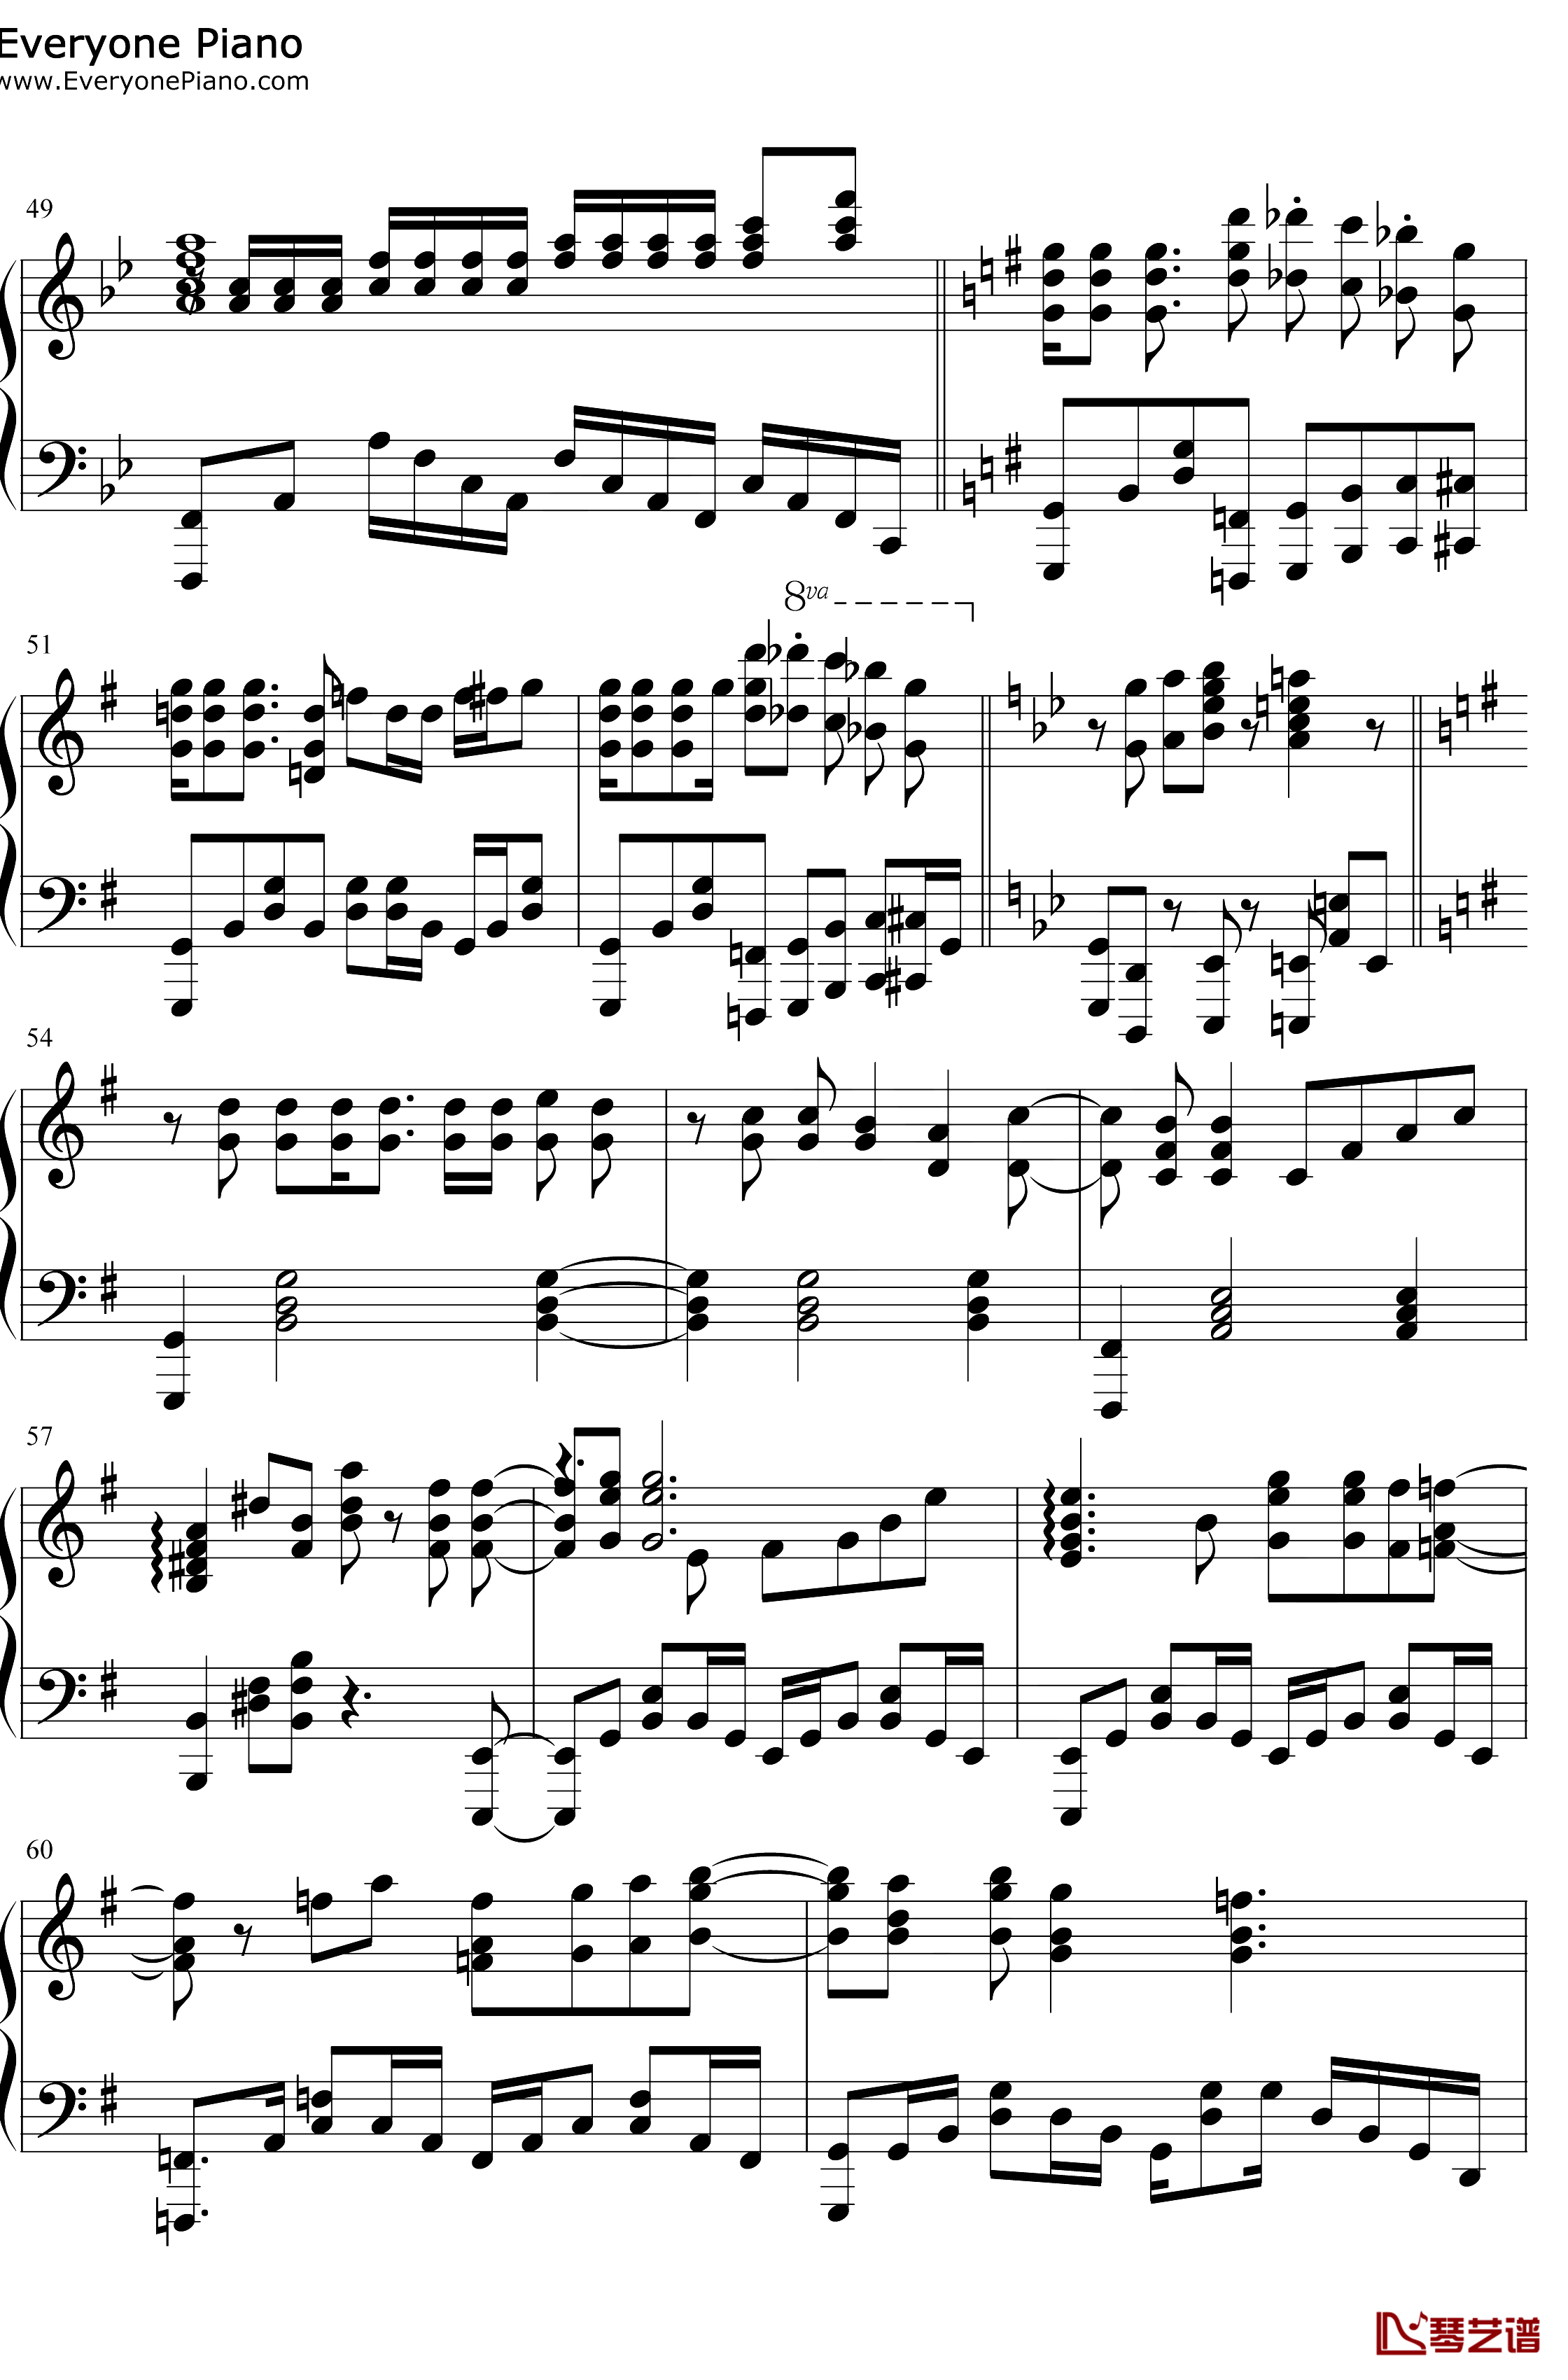 スマイルスキル=スキスキル钢琴谱-麦露烈娜梅维丝珀琳-我不是说了能力要平均值么OP6